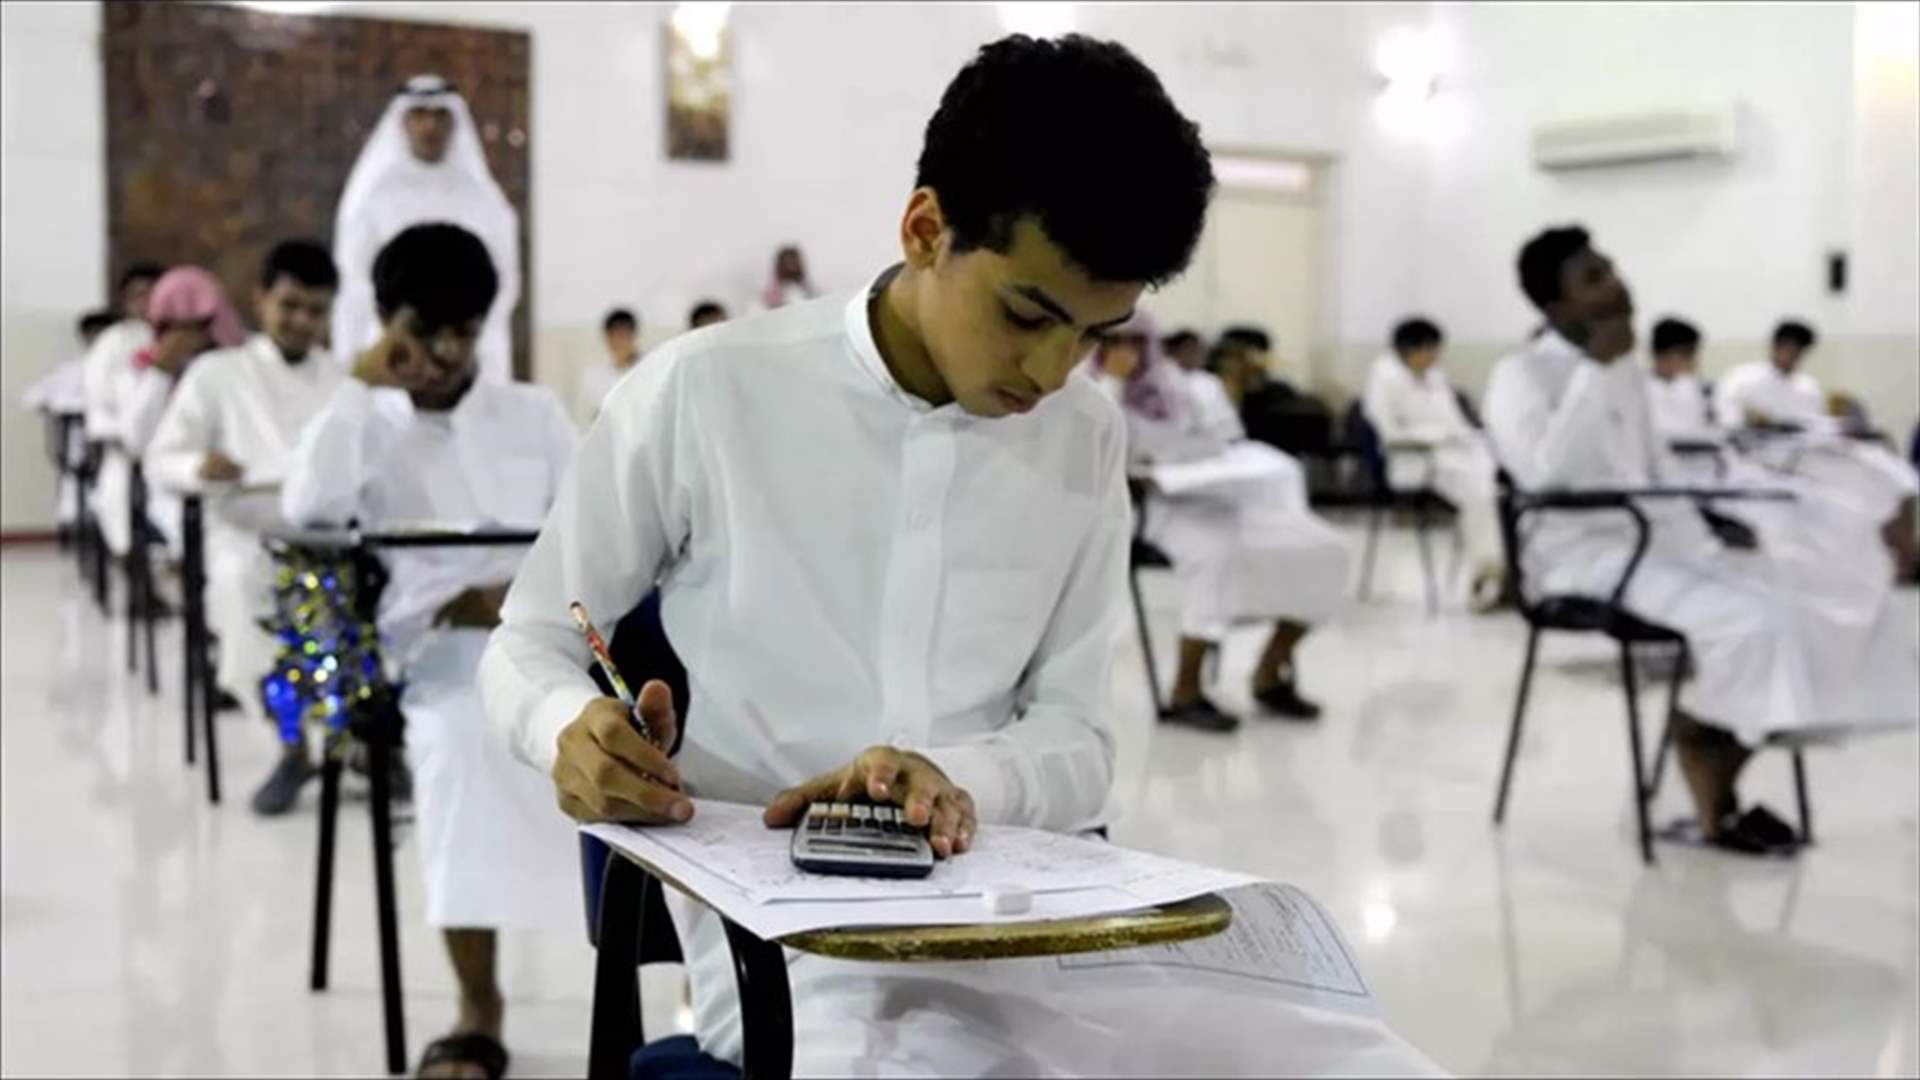 السعودية تستأنف الدراسة عن بُعد في أول 7 أسابيع من العام الدراسي الجديد